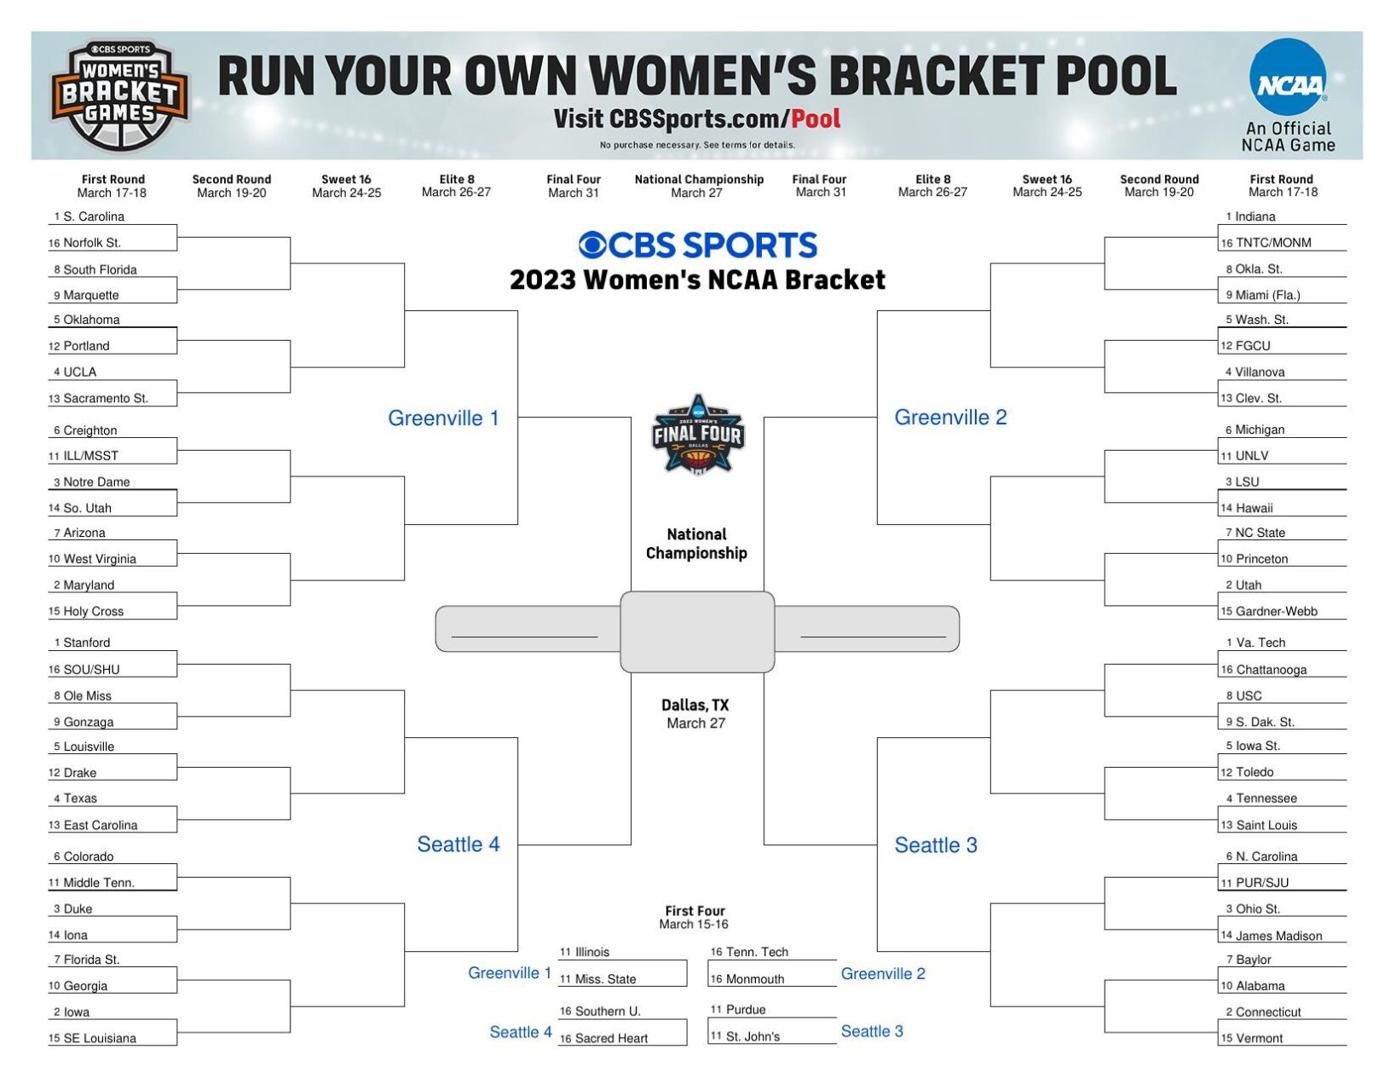 CBS Sports women's NCAA tournament bracket